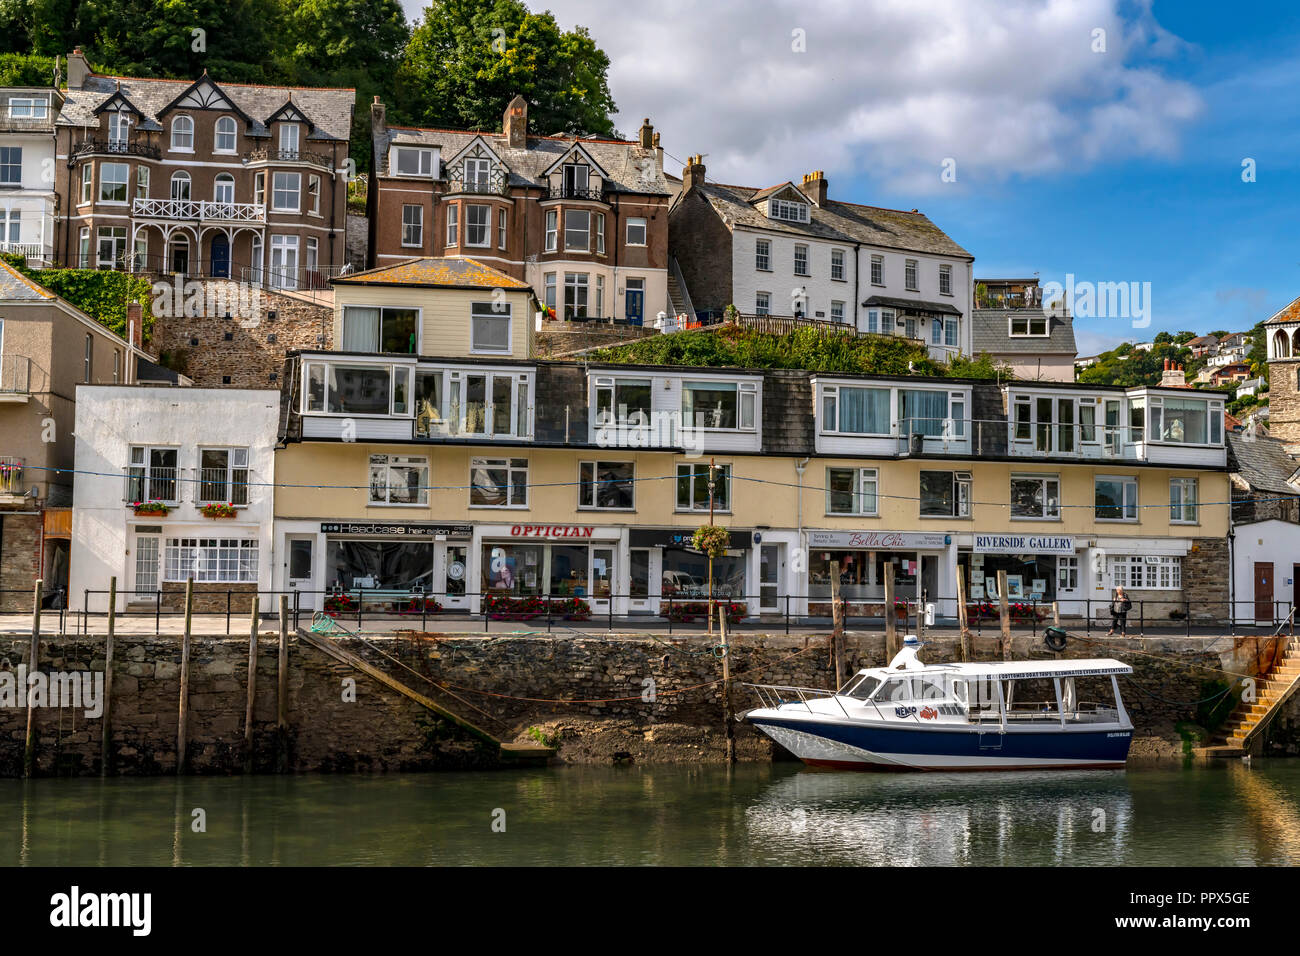 LOOE, Cornwall England UK Looe ein sehr beliebtes Fischereihafen ein  Ferienort voll von Hotels, Sehenswürdigkeiten und Restaurants  Stockfotografie - Alamy